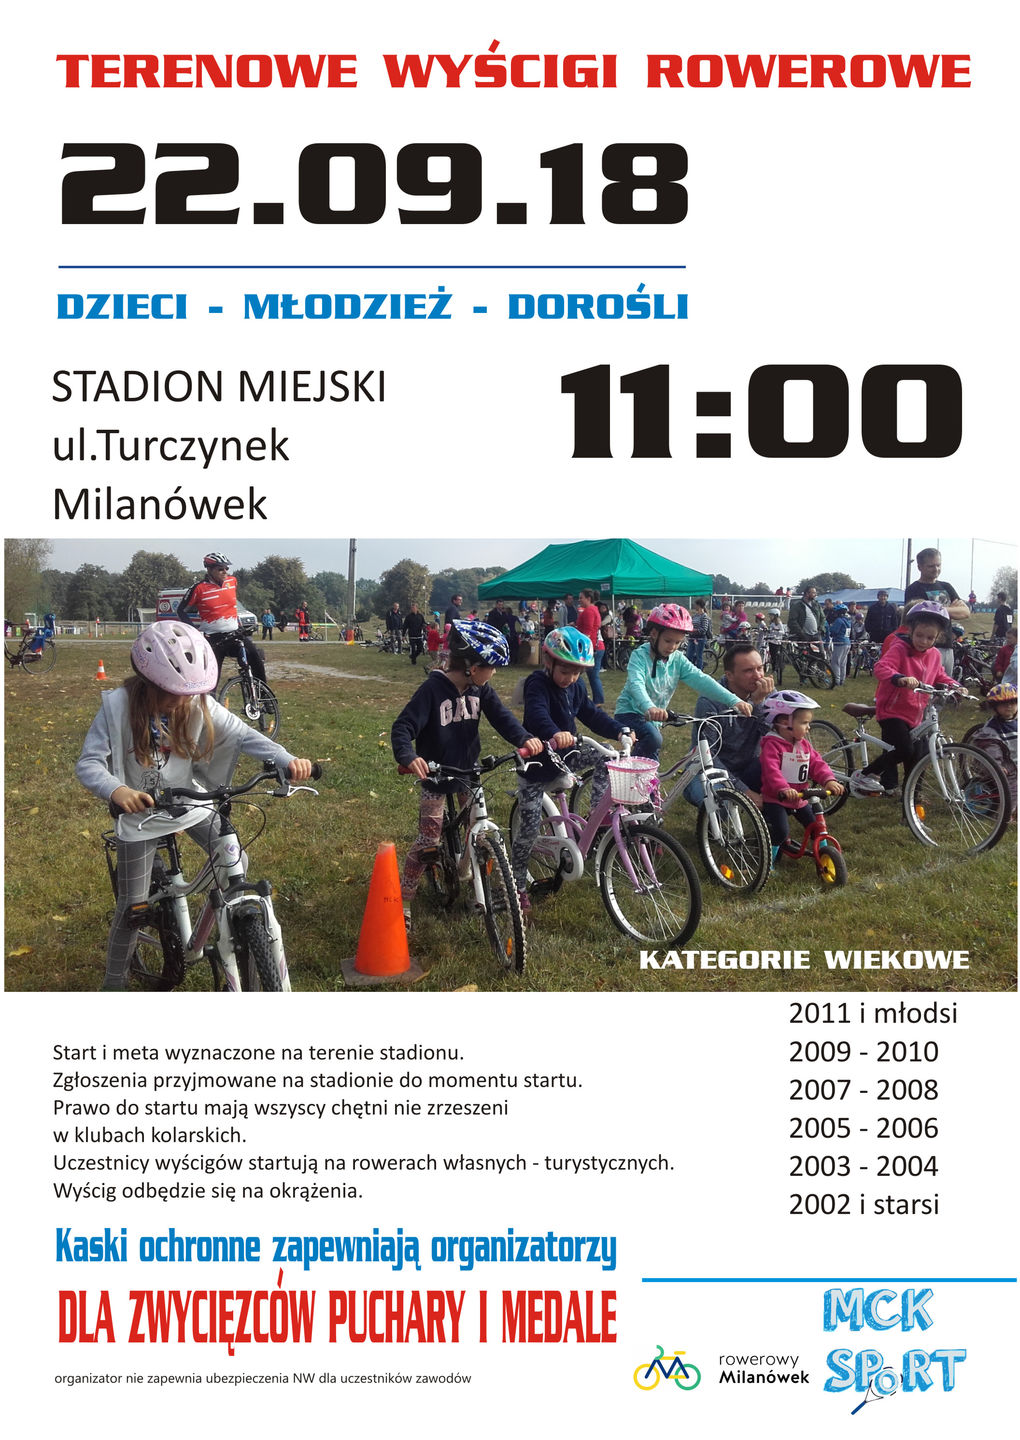 Plakat promujący wyścigi rowerowe